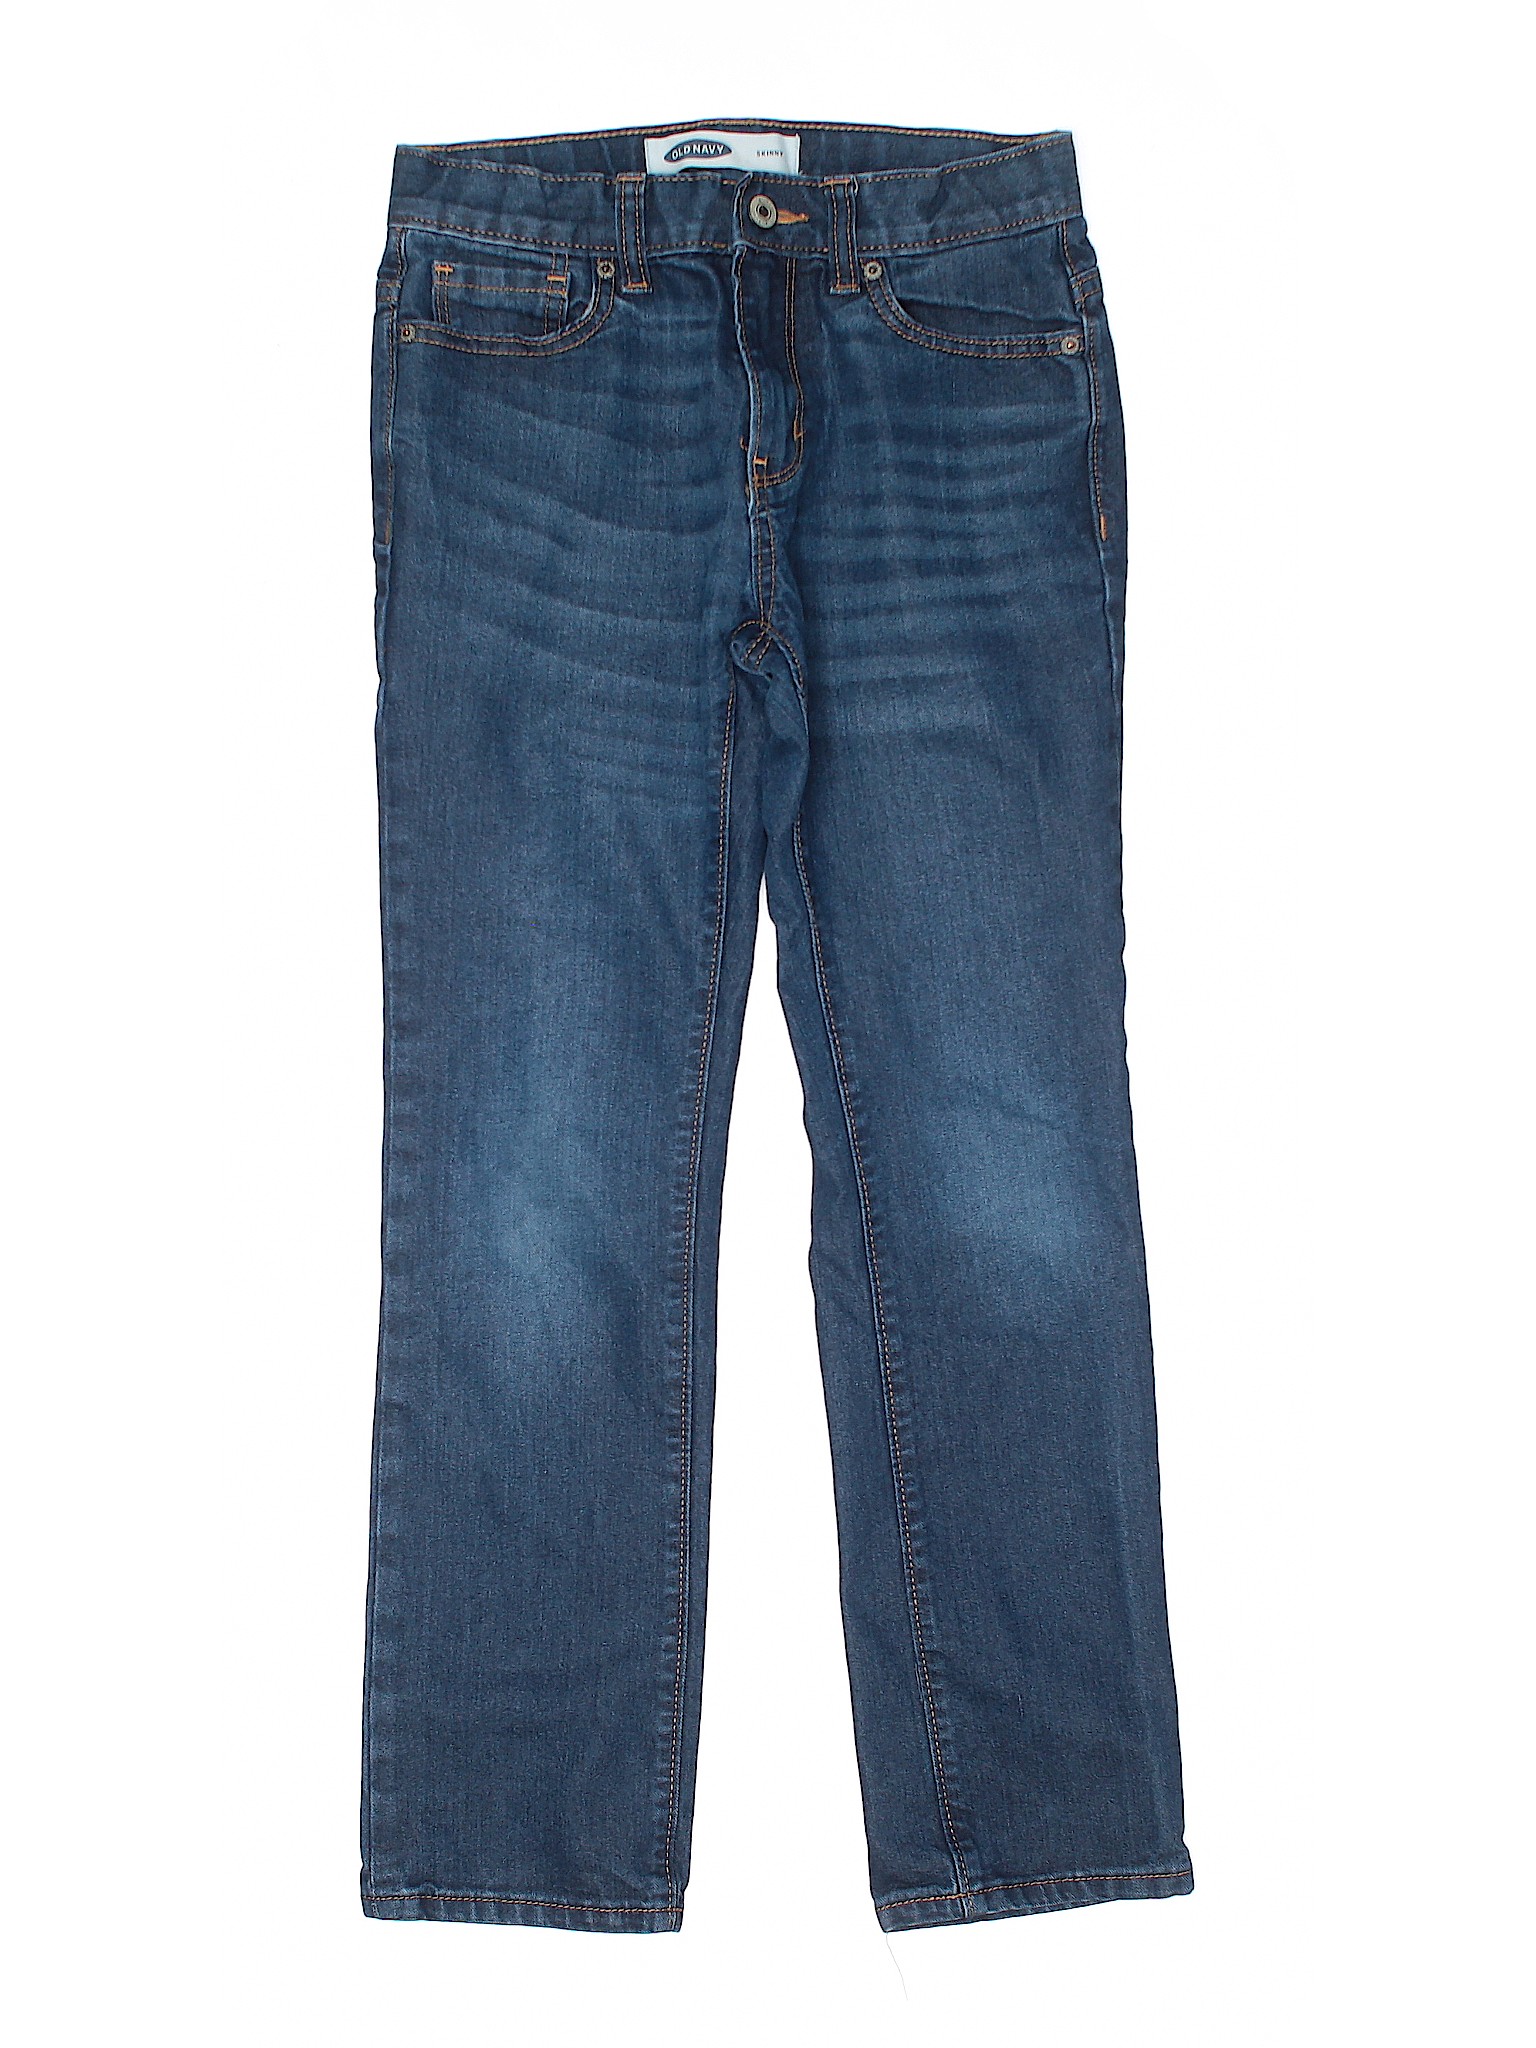 Old Navy Boys Blue Jeans 10 | eBay